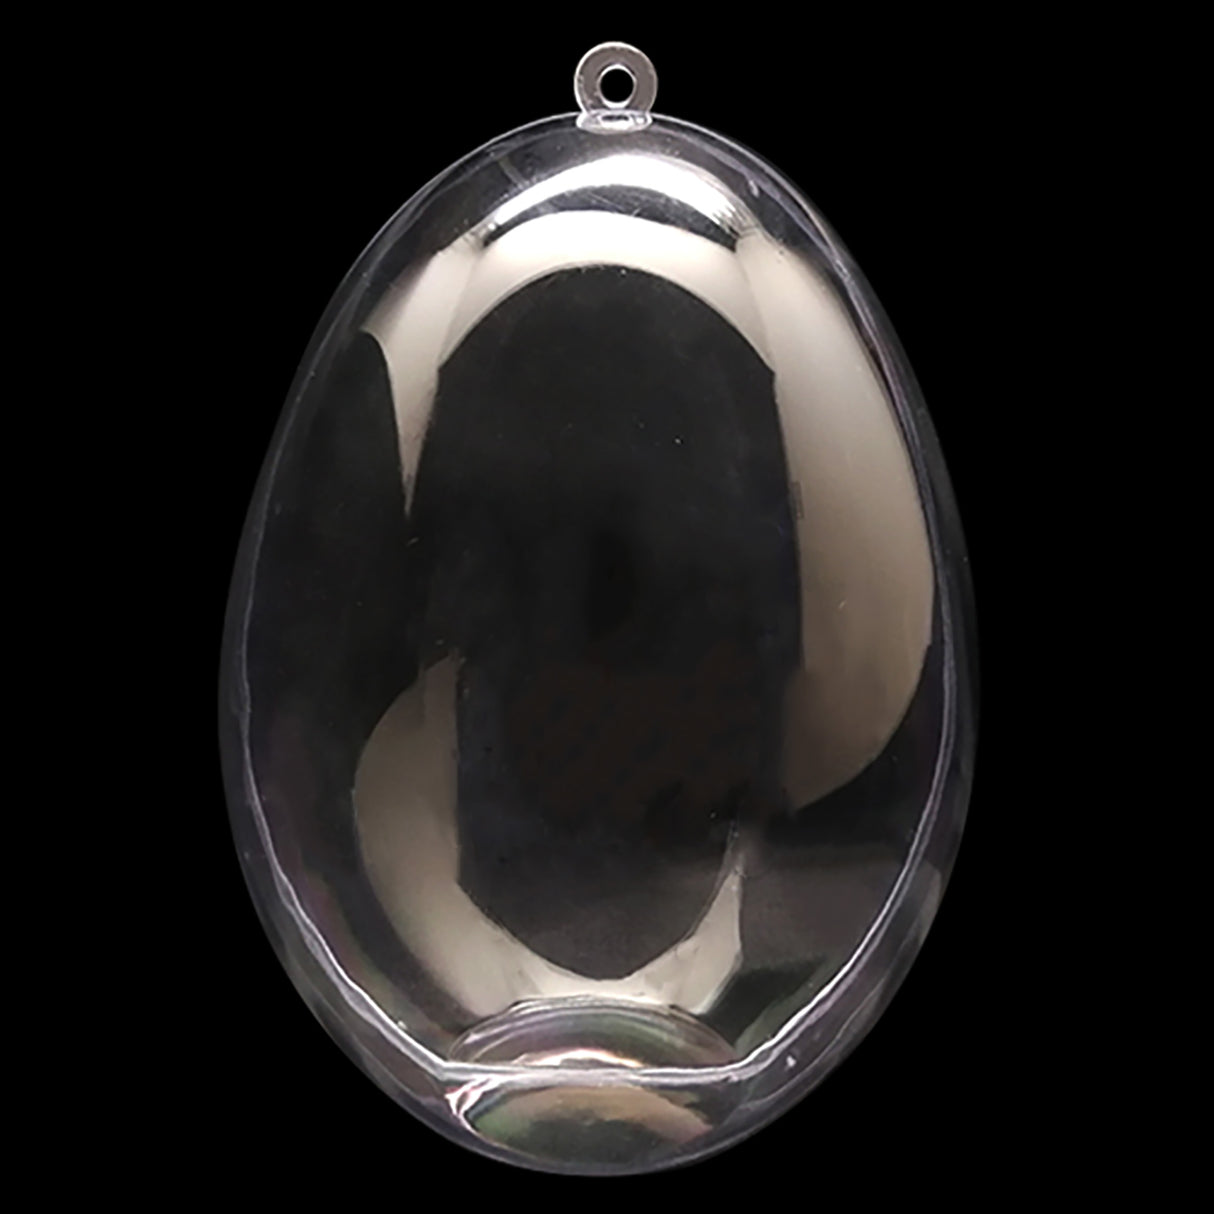 Juego de 3 adornos de huevos de plástico transparente de 5,9 pulgadas (150 mm)